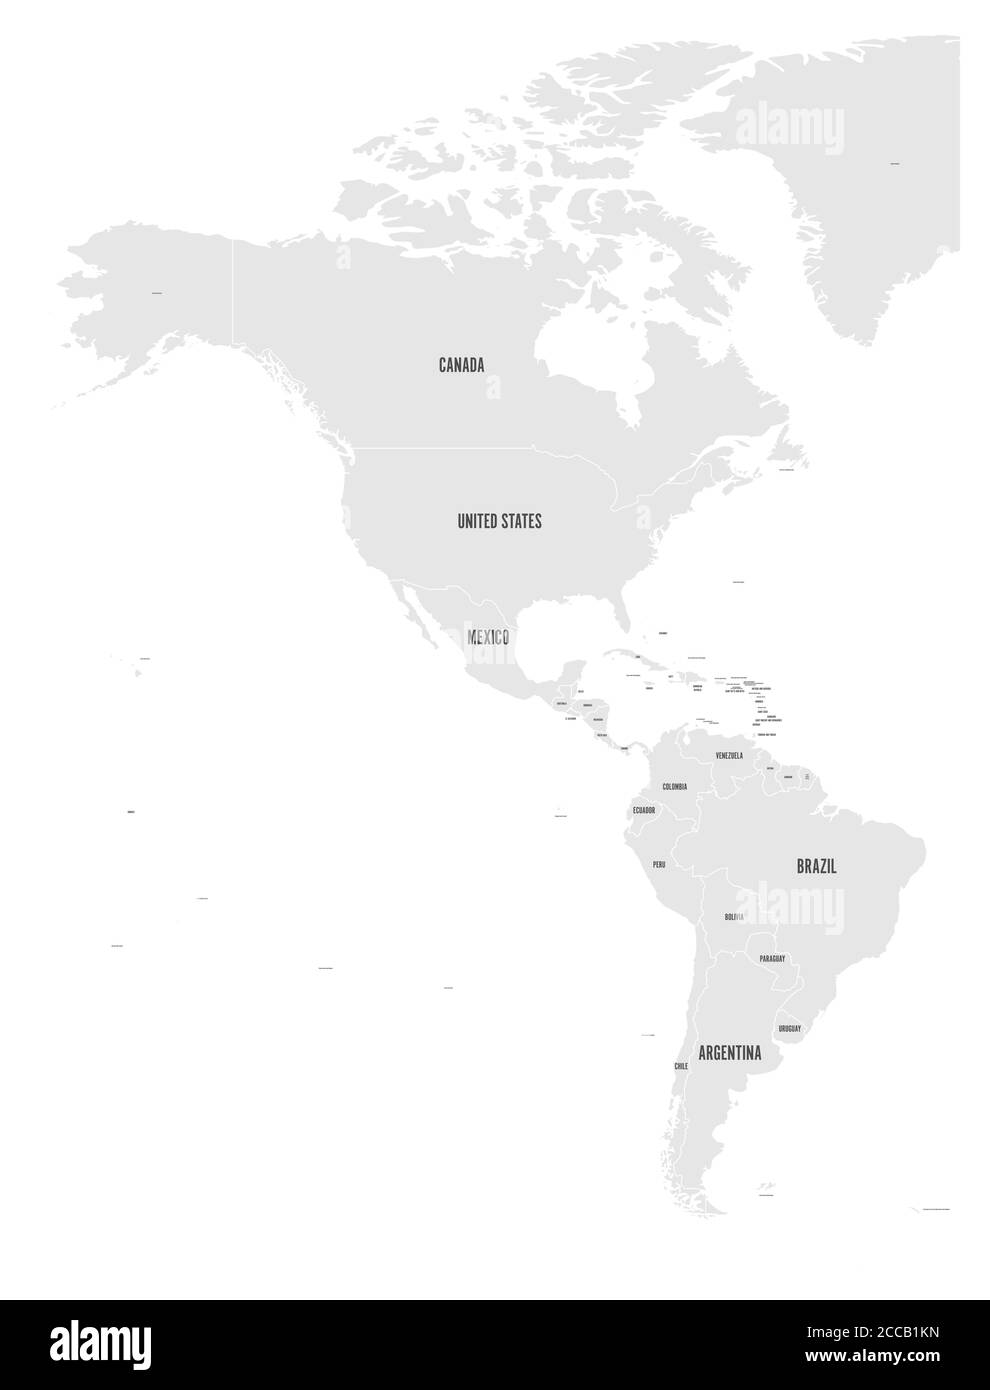 Politische Landkarte von Amerika in grau auf weißem Hintergrund. Nord- und Südamerika mit Länderkennzeichen. Einfache flache Vektordarstellung. Stock Vektor